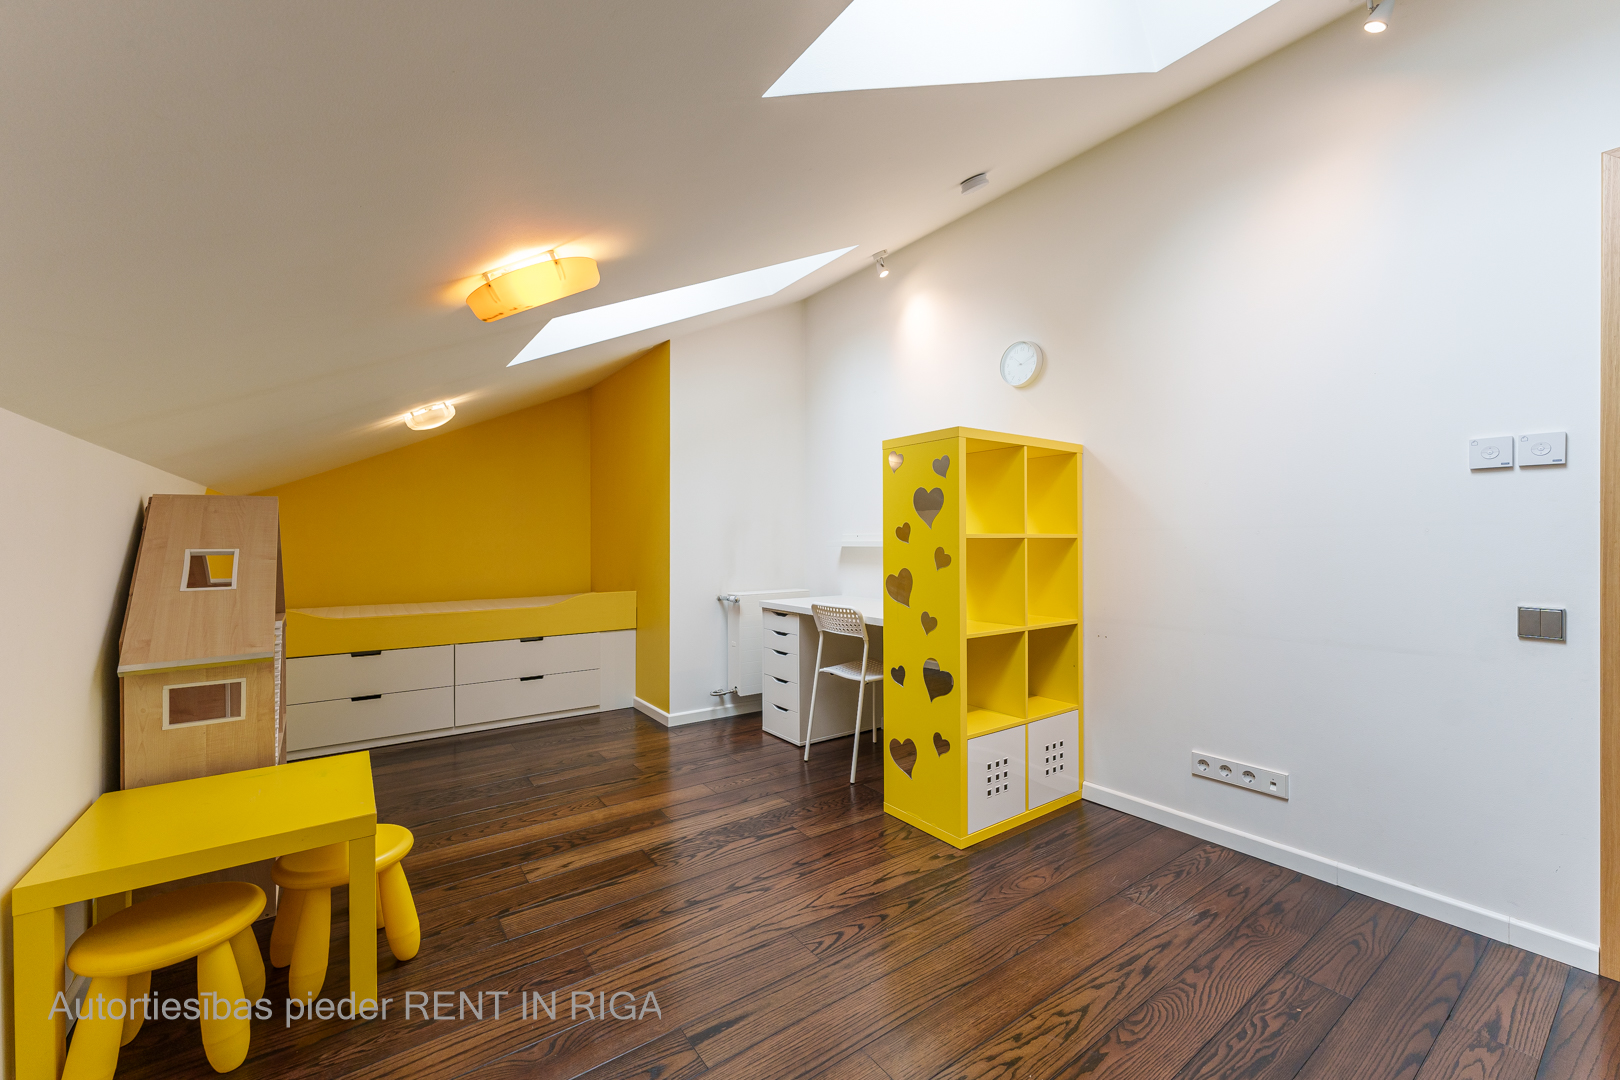 Apartment for rent, Baložu street 33 - Image 1